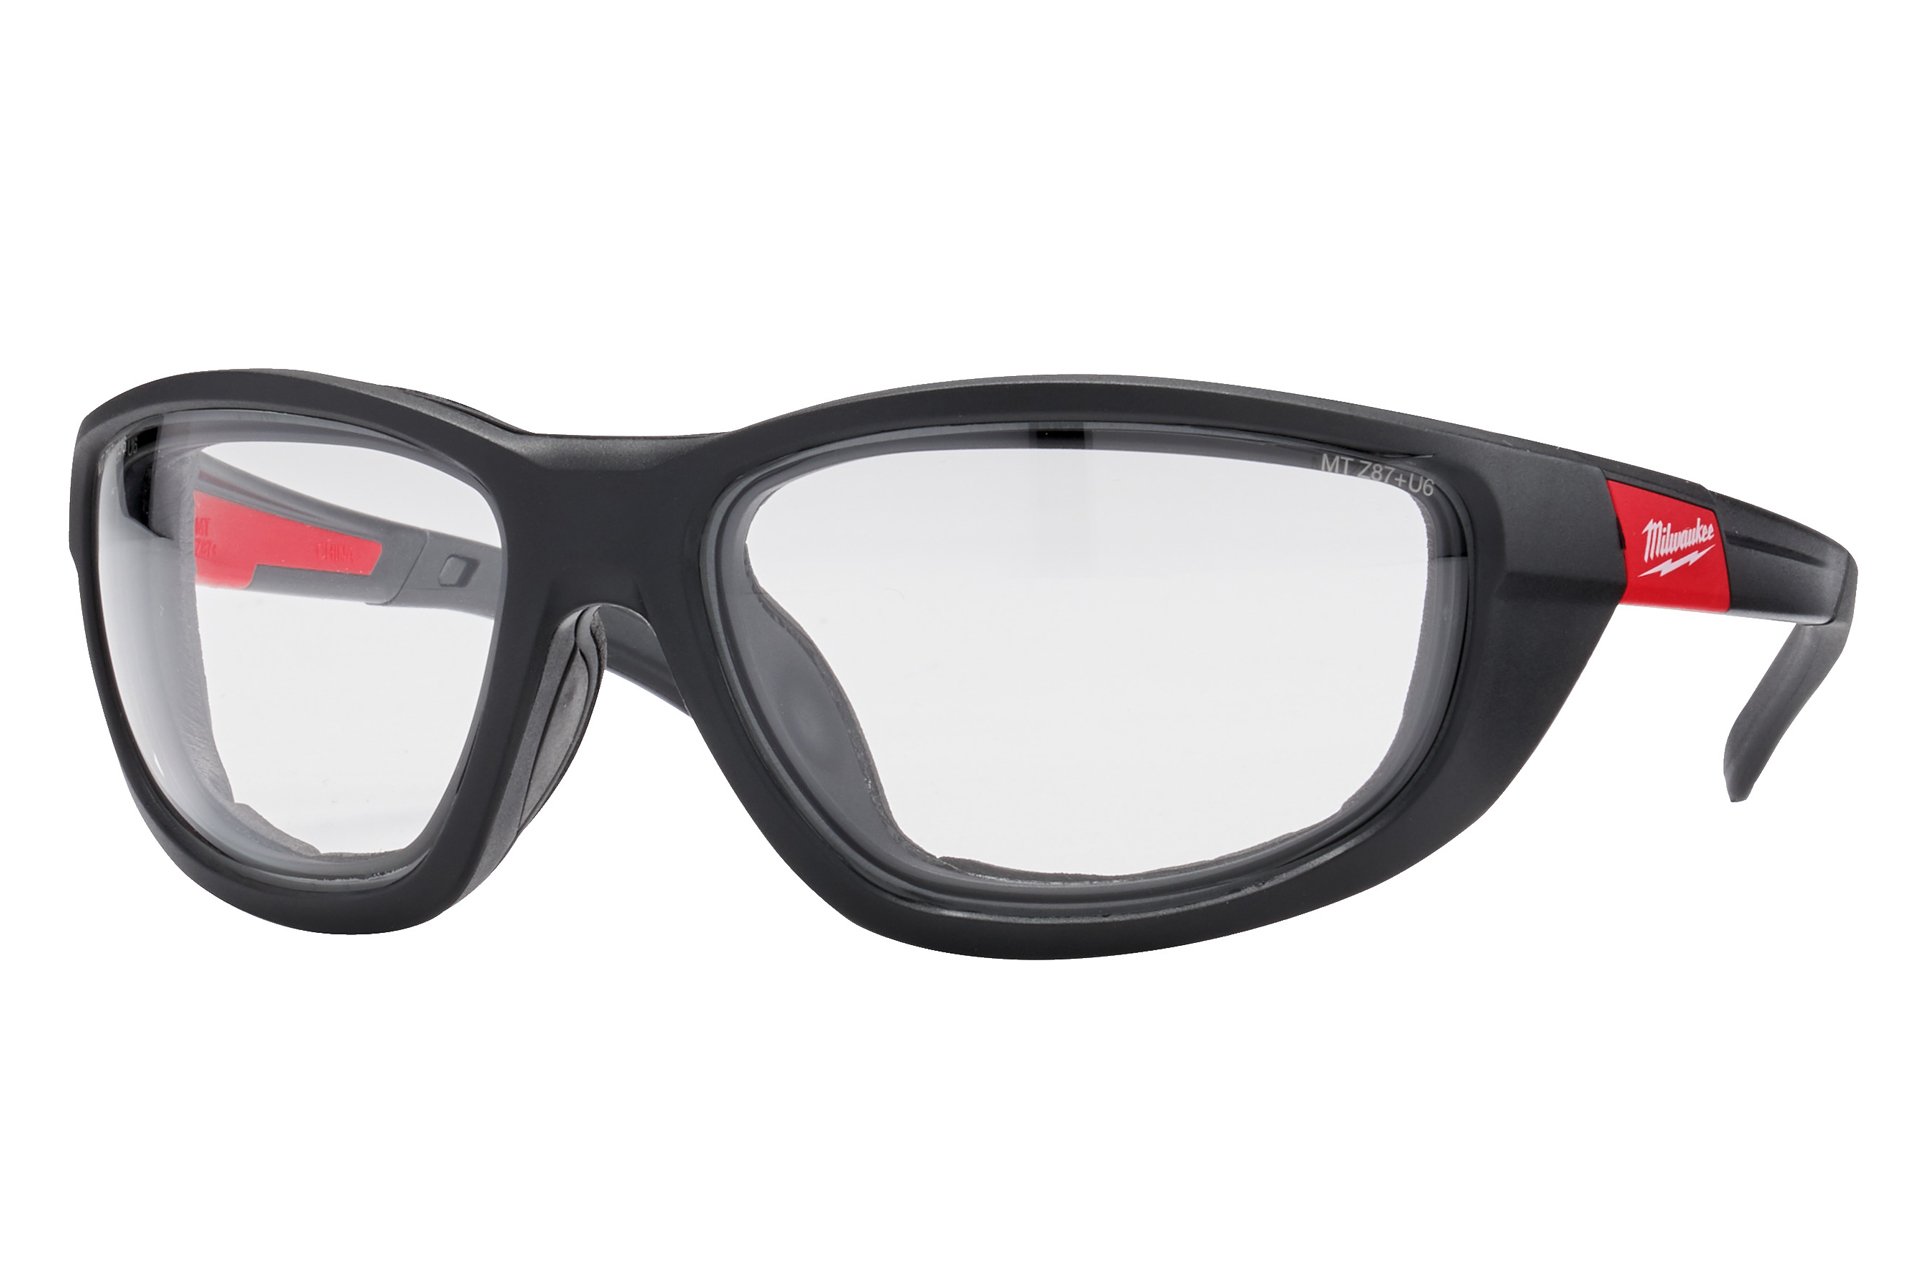 Milwaukee Premium Schutzbrille mit Schaumstoffauflage, klar